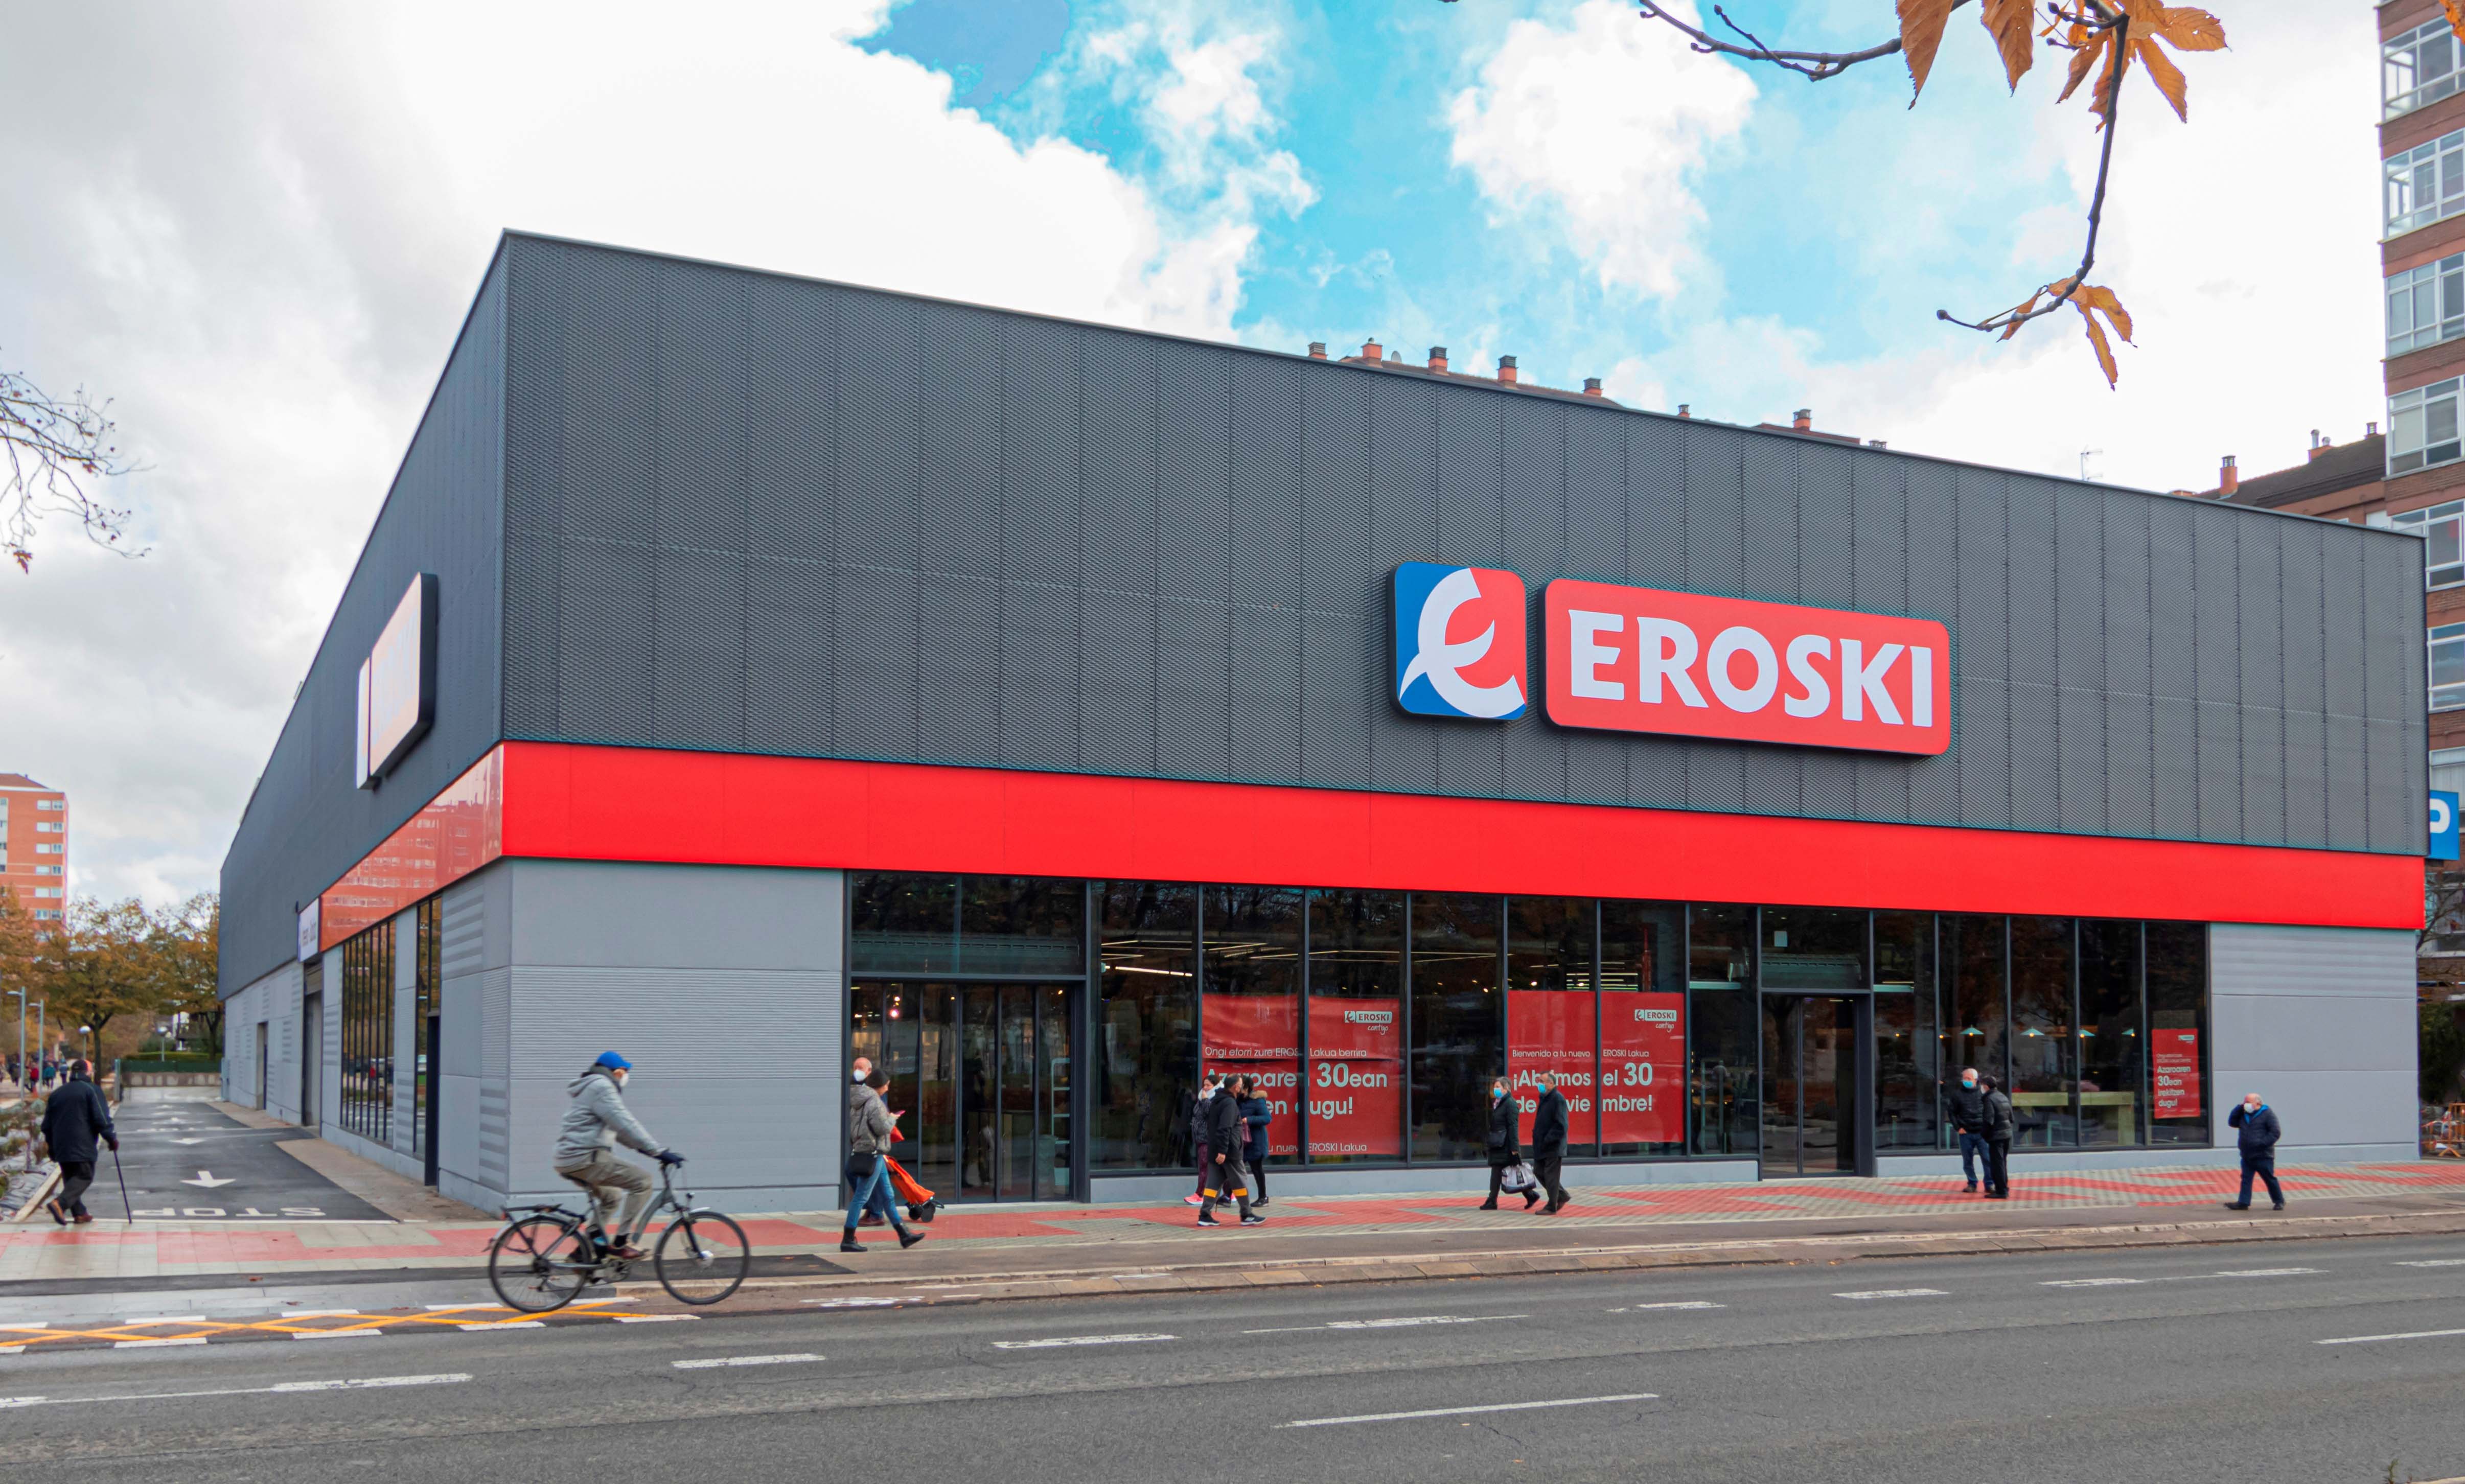 Supermercado de Eroski.